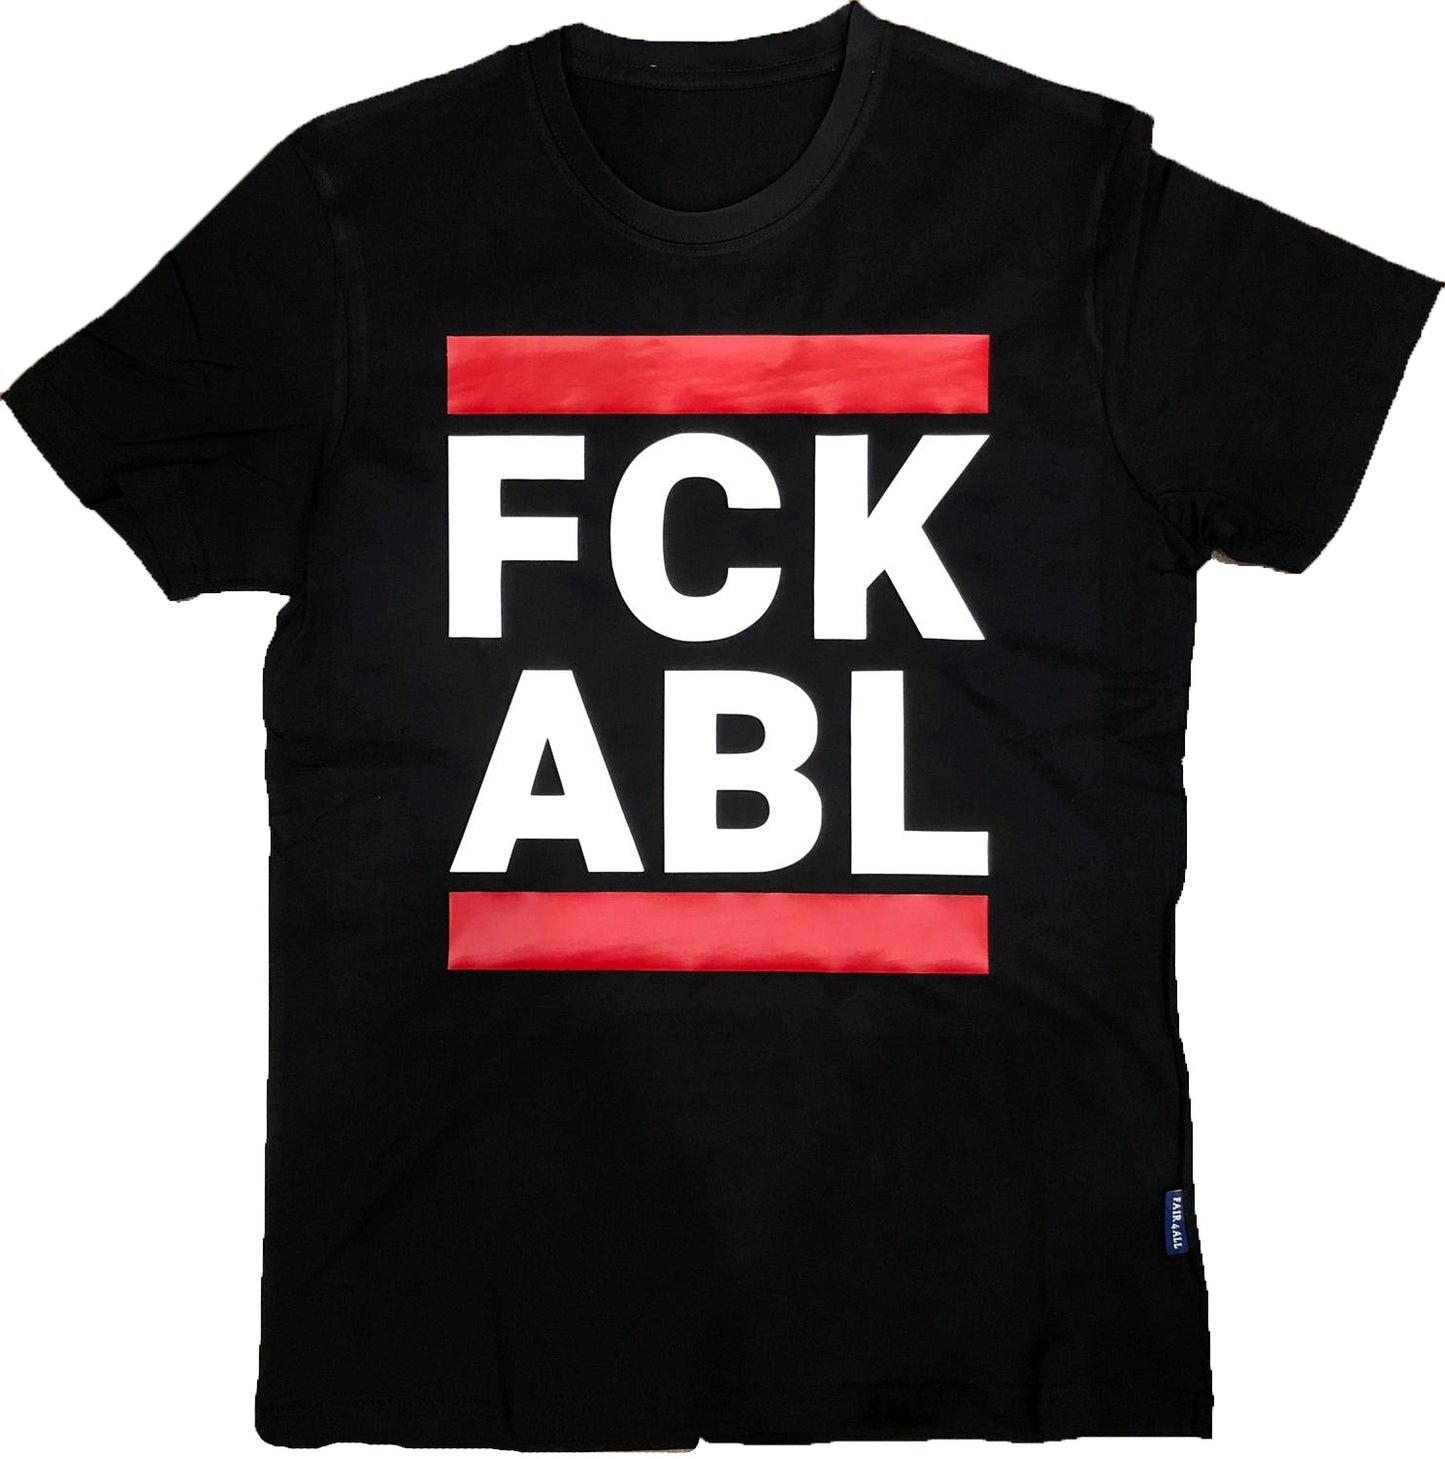 schwarzes t-shirt von sk8erboy mit dem aufdruck fck abl was soviel wie fuck able in englich heißen soll und roten balken